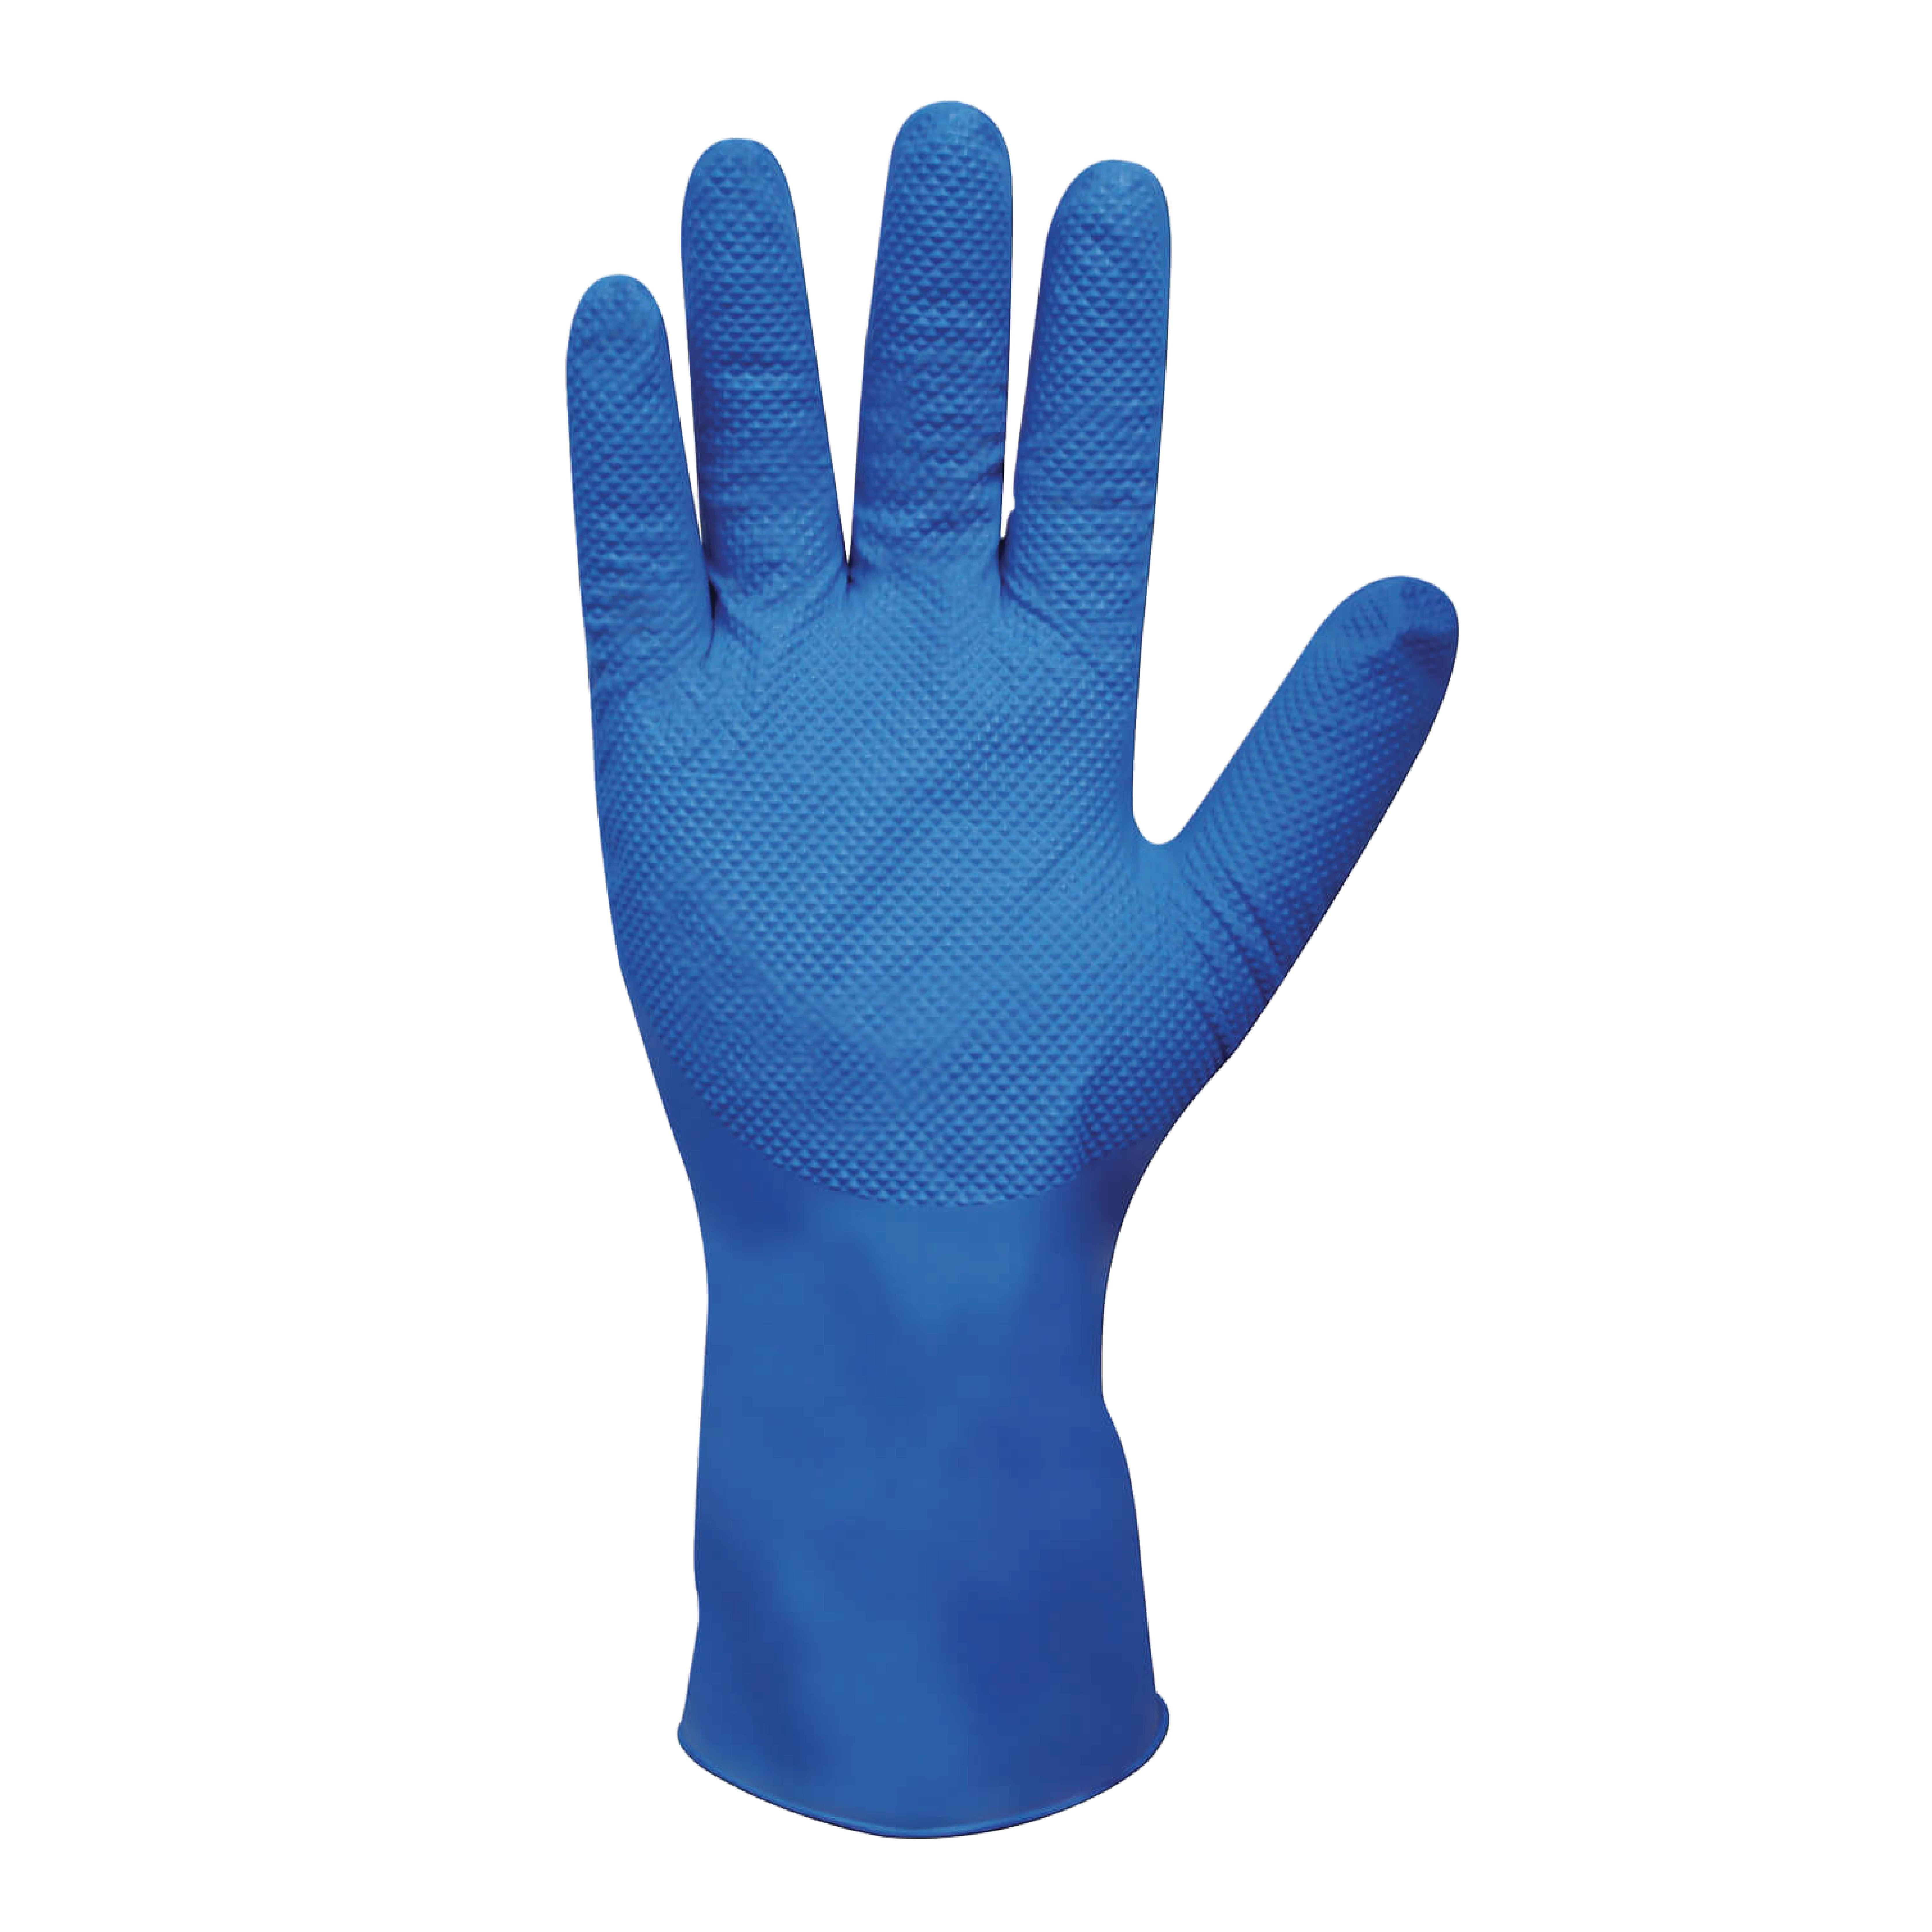 Heavy Duty Nitrile Diamond Grip Long Cuff Powder Free Gloves Blue - Medium (500/